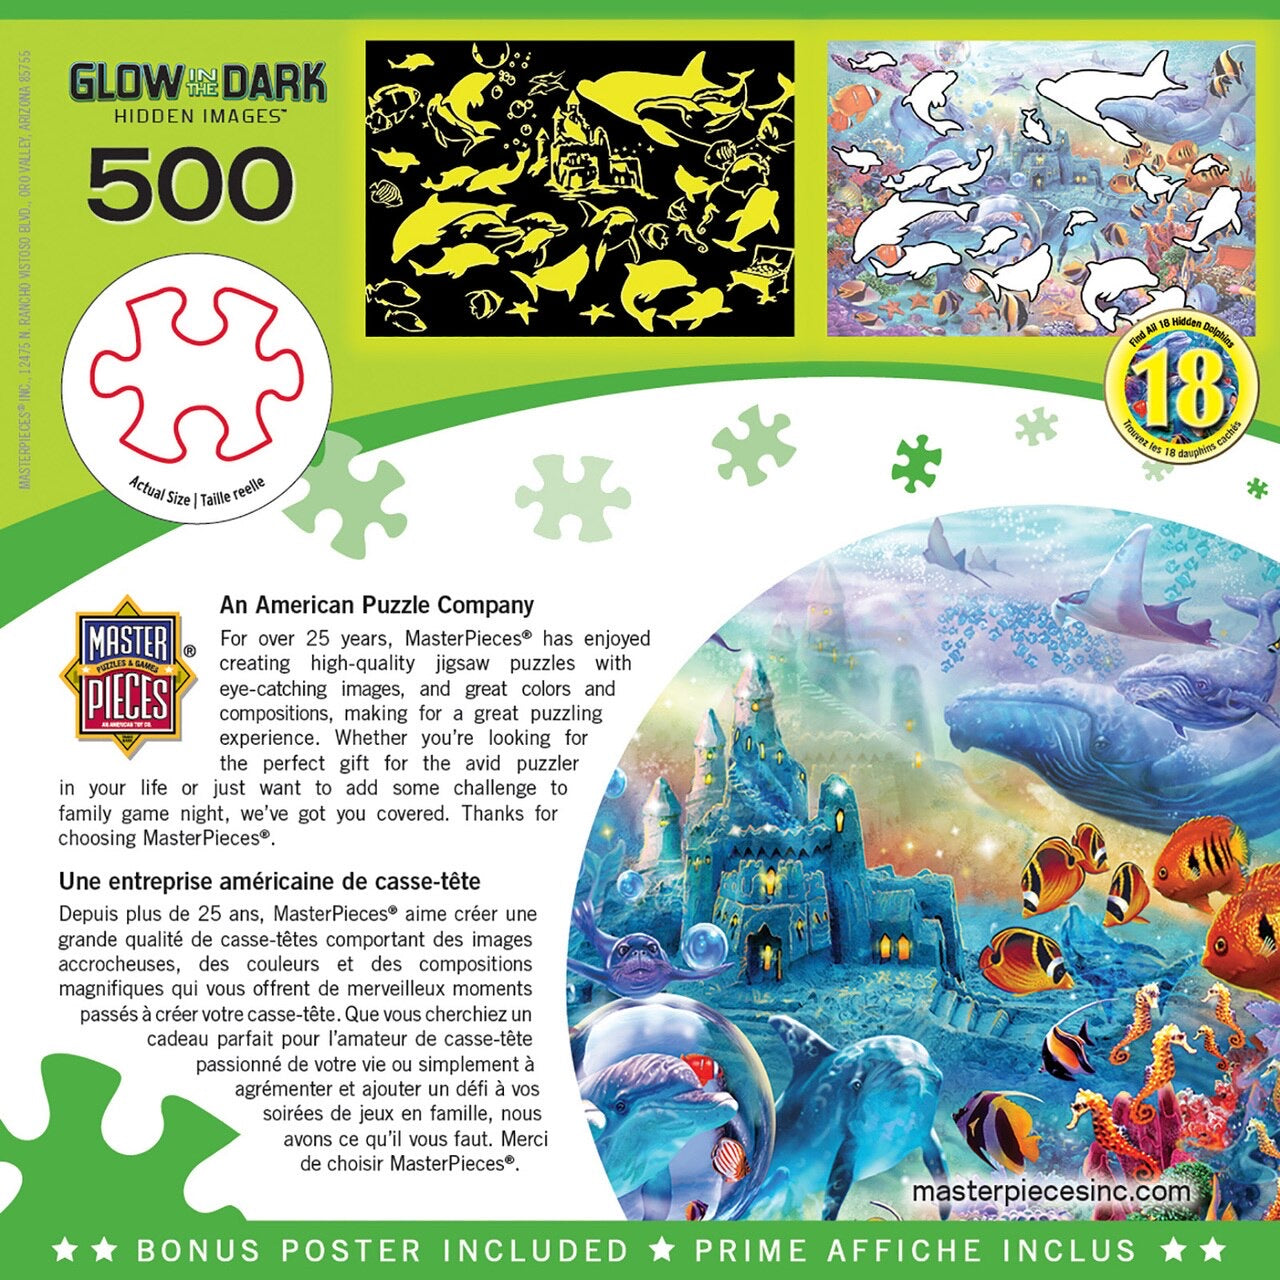 Sea Castle Delight 500 Piece Hidden Image Glow In The Dark Puzzle    